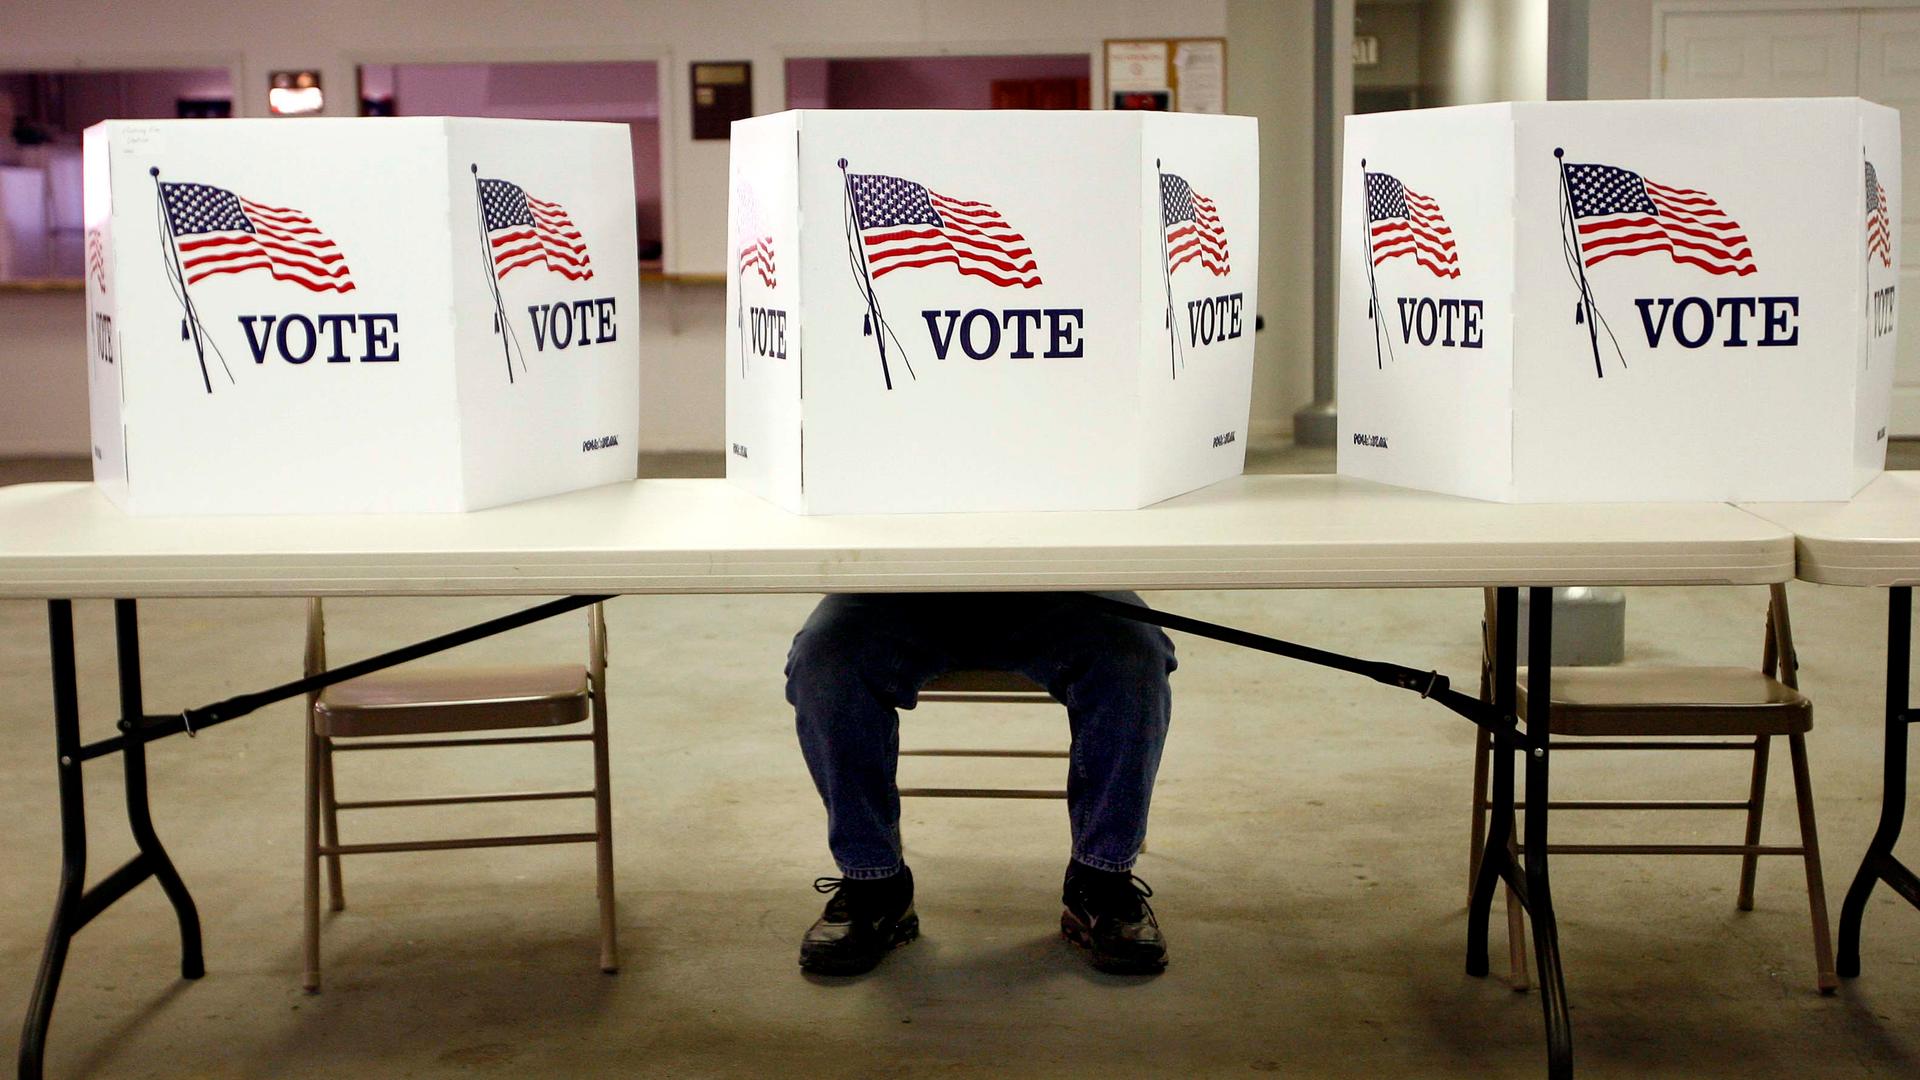 Una persona esta sentada dentro de una urna de votacion, cubierta con carteles que dicen "vote" y con banderas de los Estados Unidos.